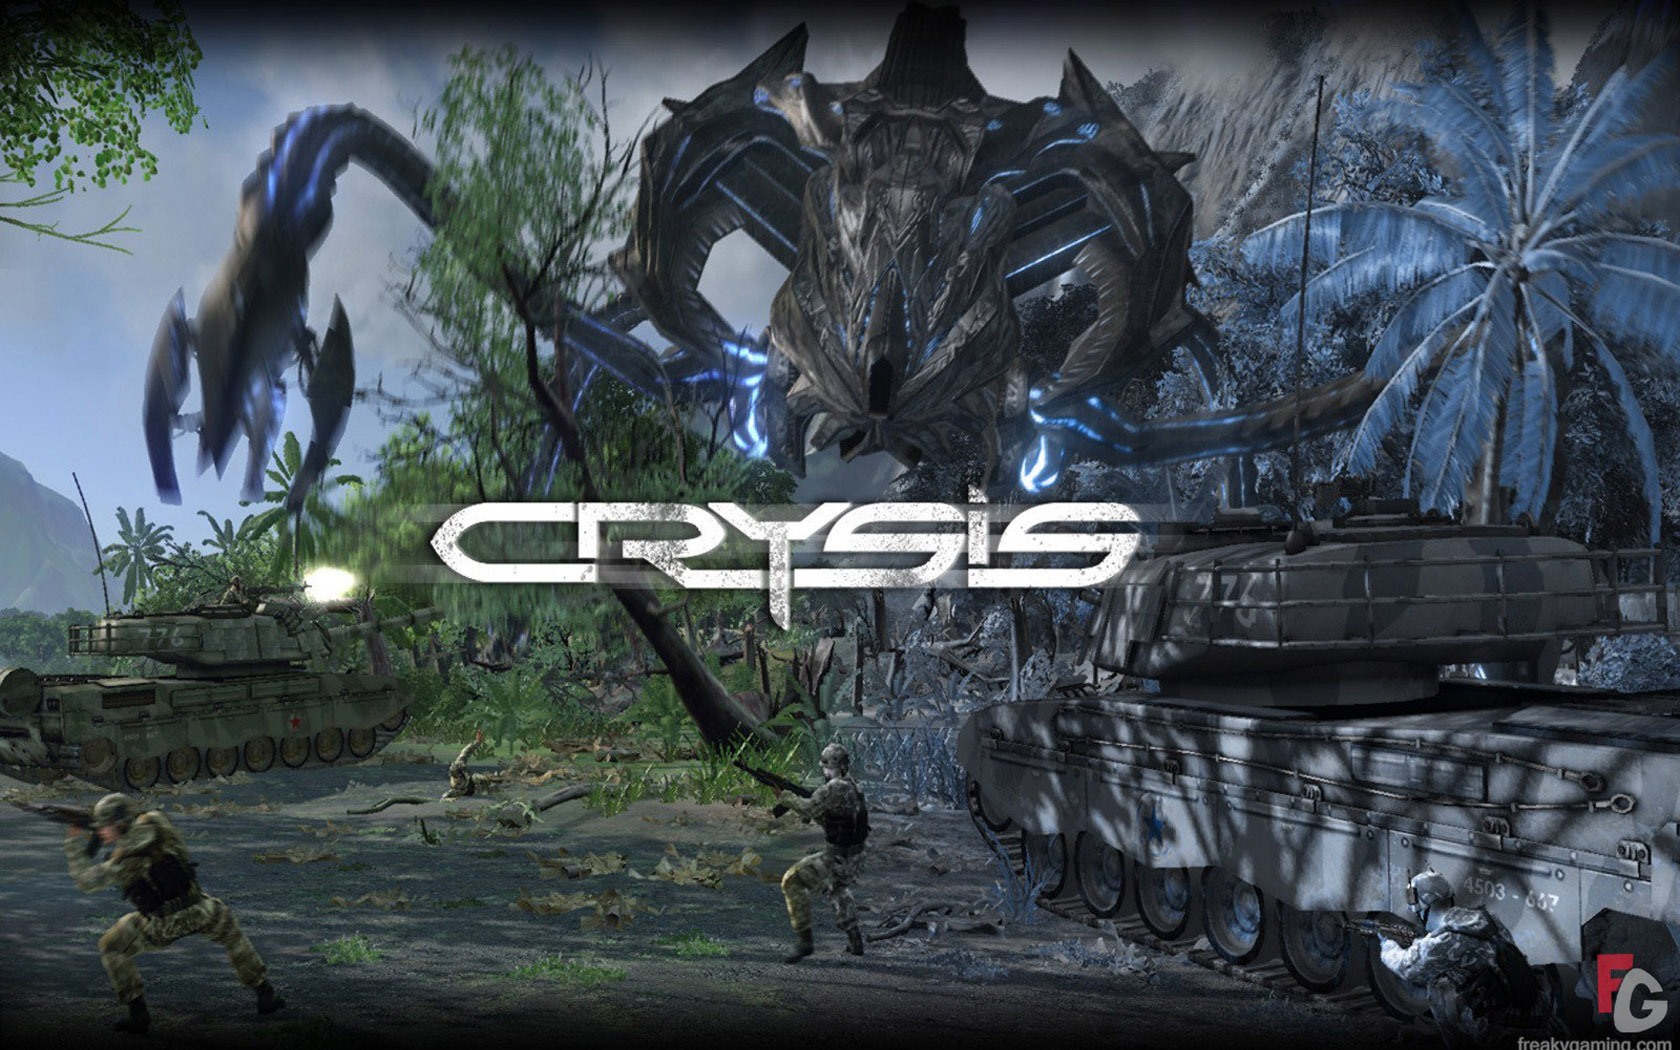  Crysisの壁紙(3) #15 - 1680x1050